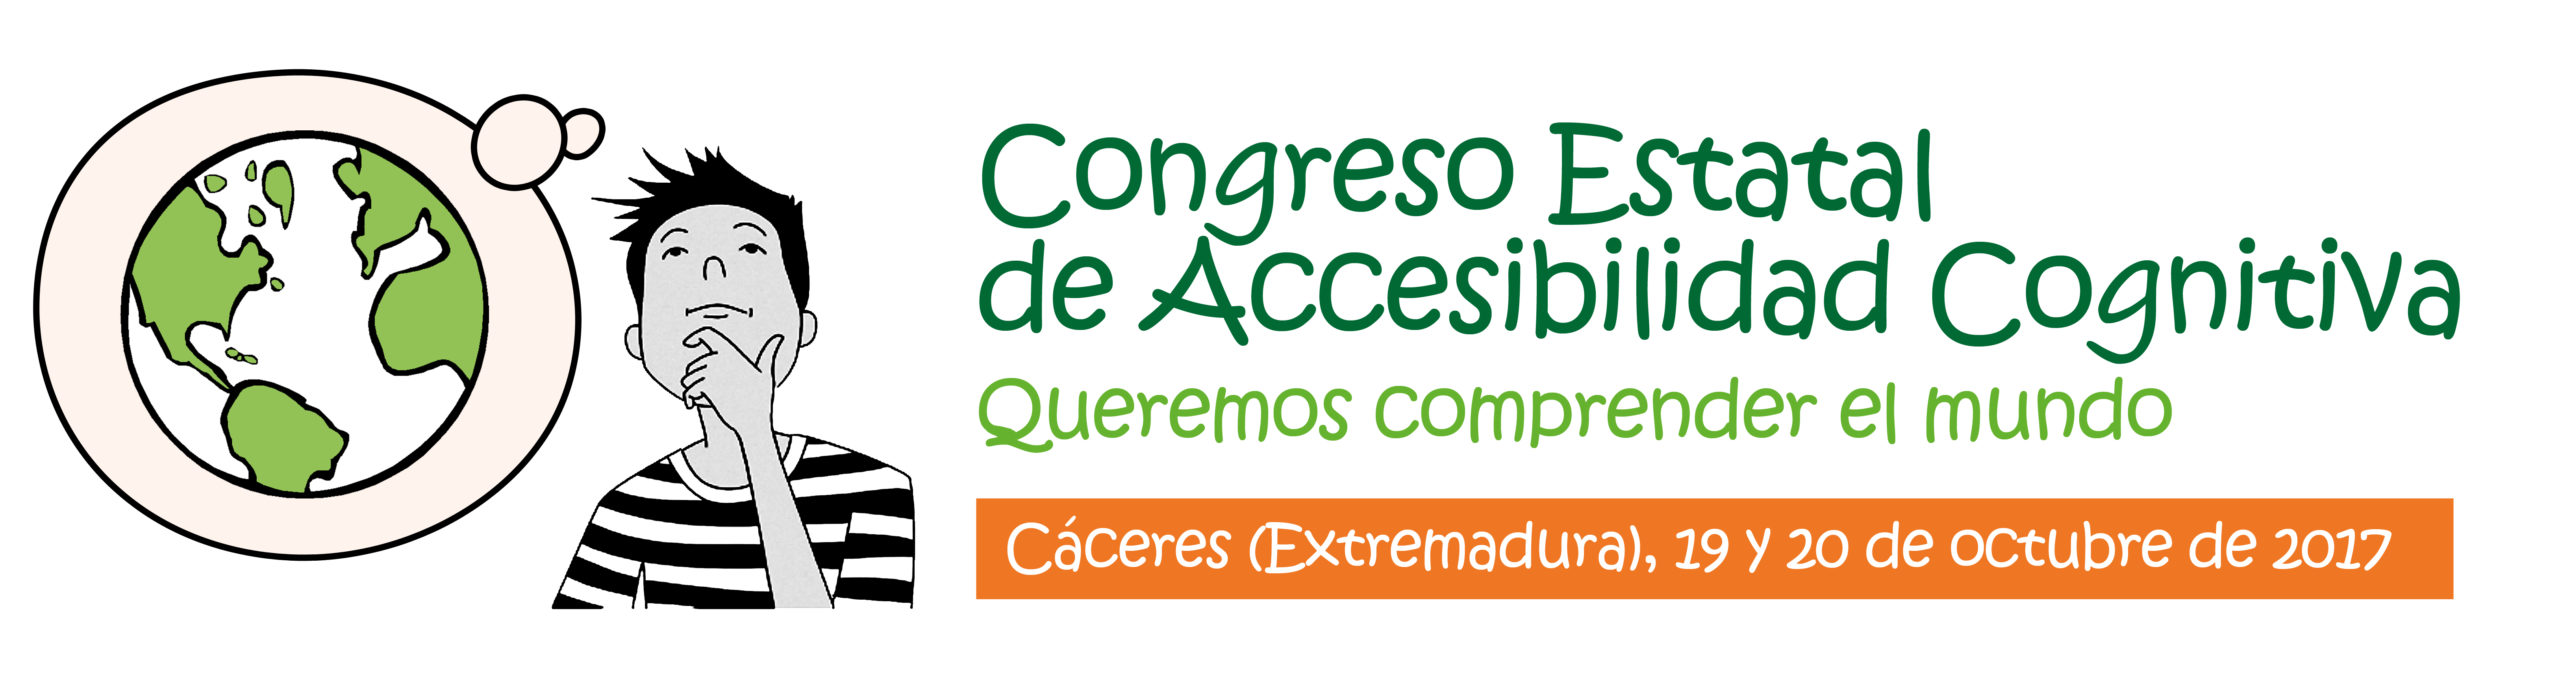 Ir a : Se presentan 108 experiencias al Congreso Estatal de Accesibilidad Cognitiva